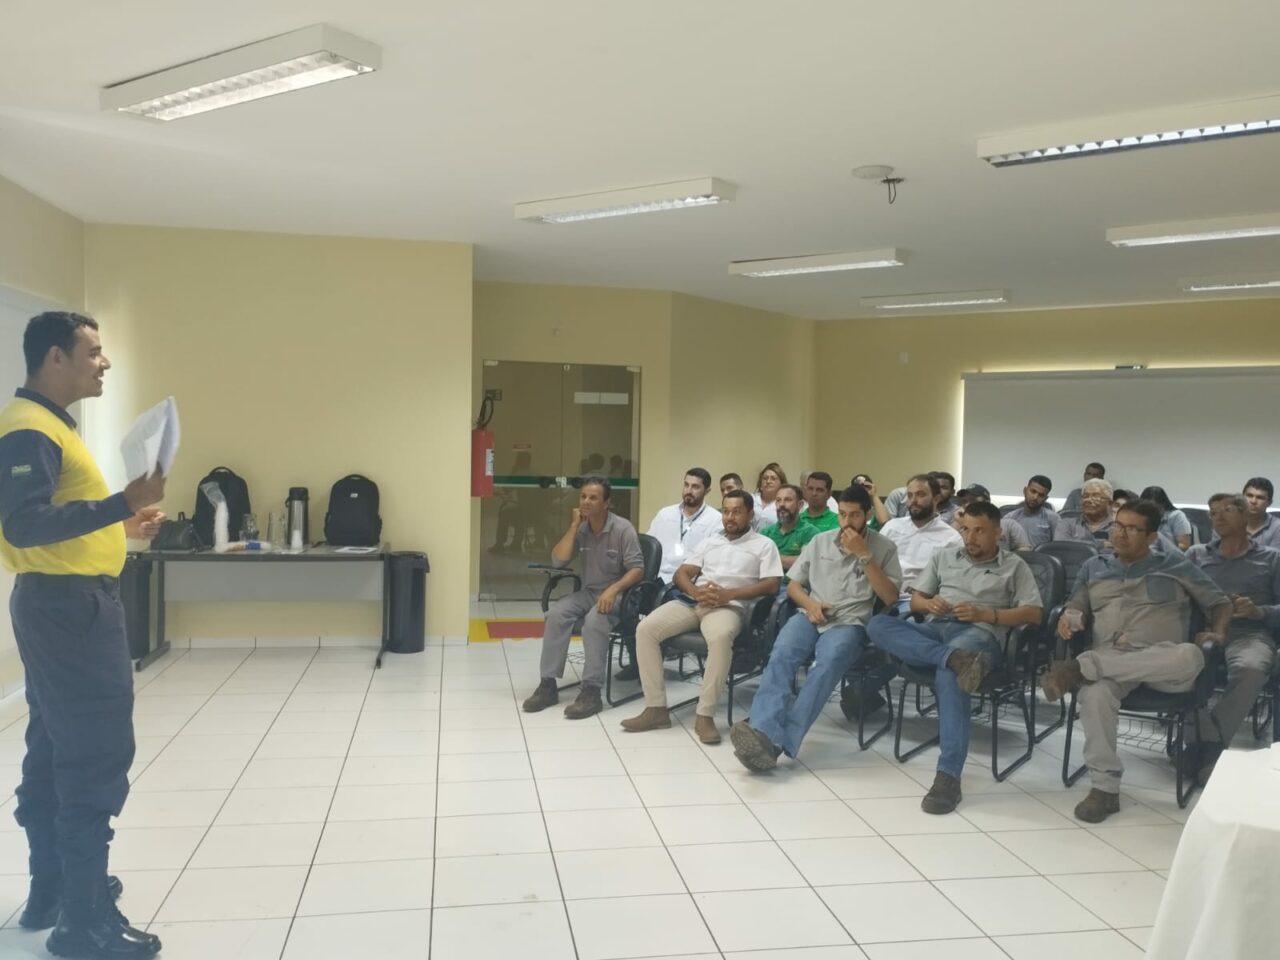 DEMUTRAN de Chapadão do Sul promove palestra sobre Trânsito Seguro em parceria com Iguaçu Máquinas